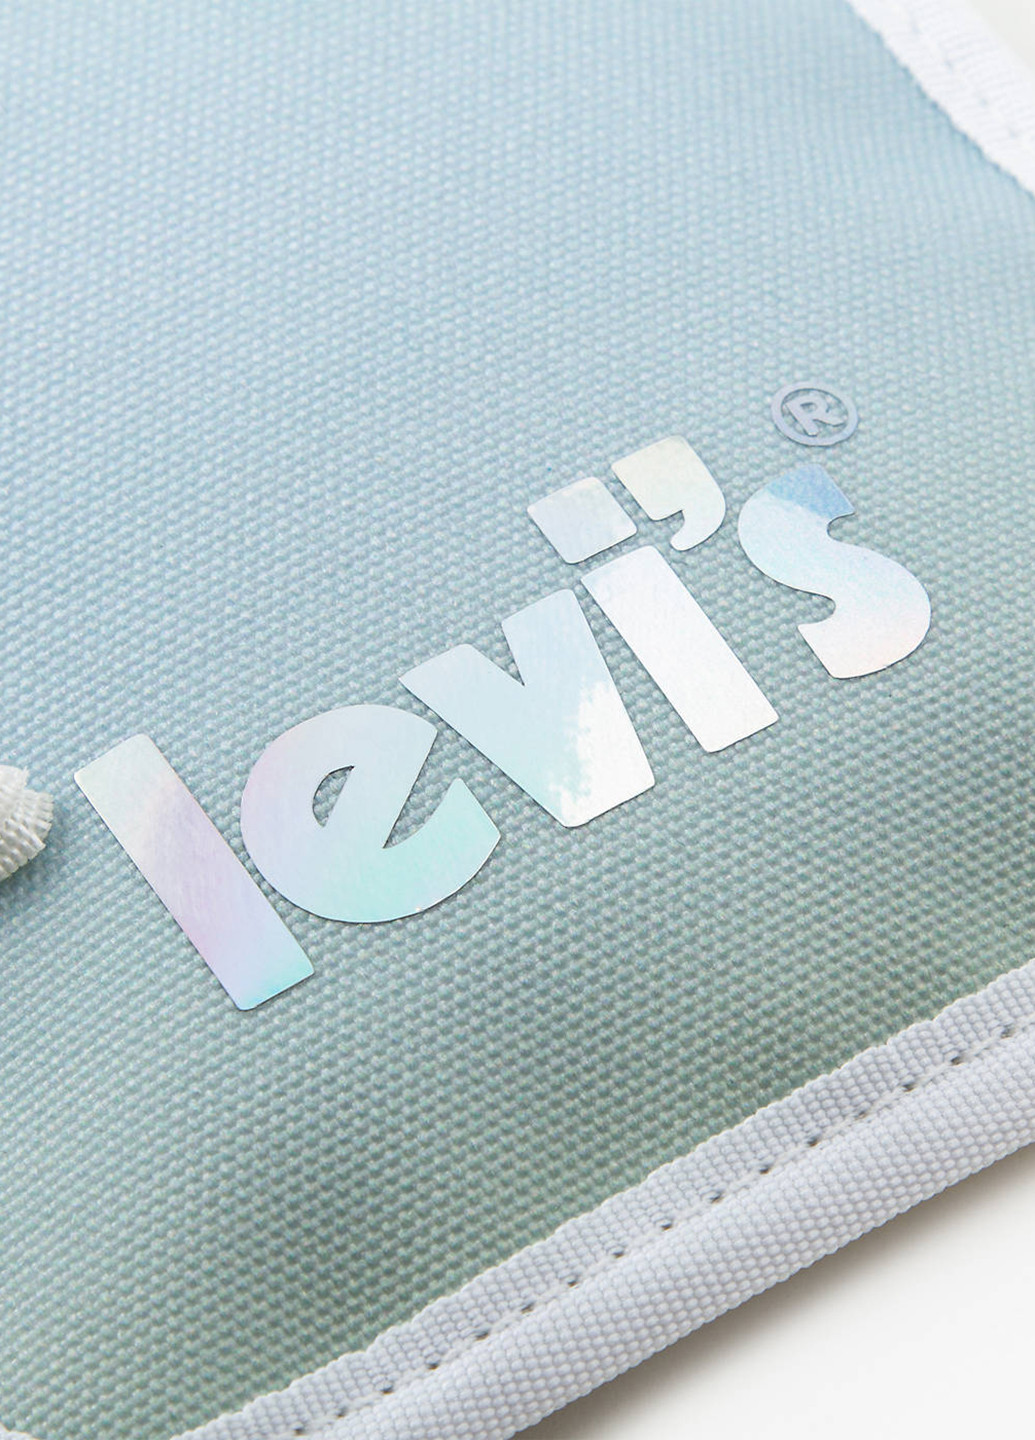 Сумка Levi's сумка-кошелёк логотип голубая кэжуал